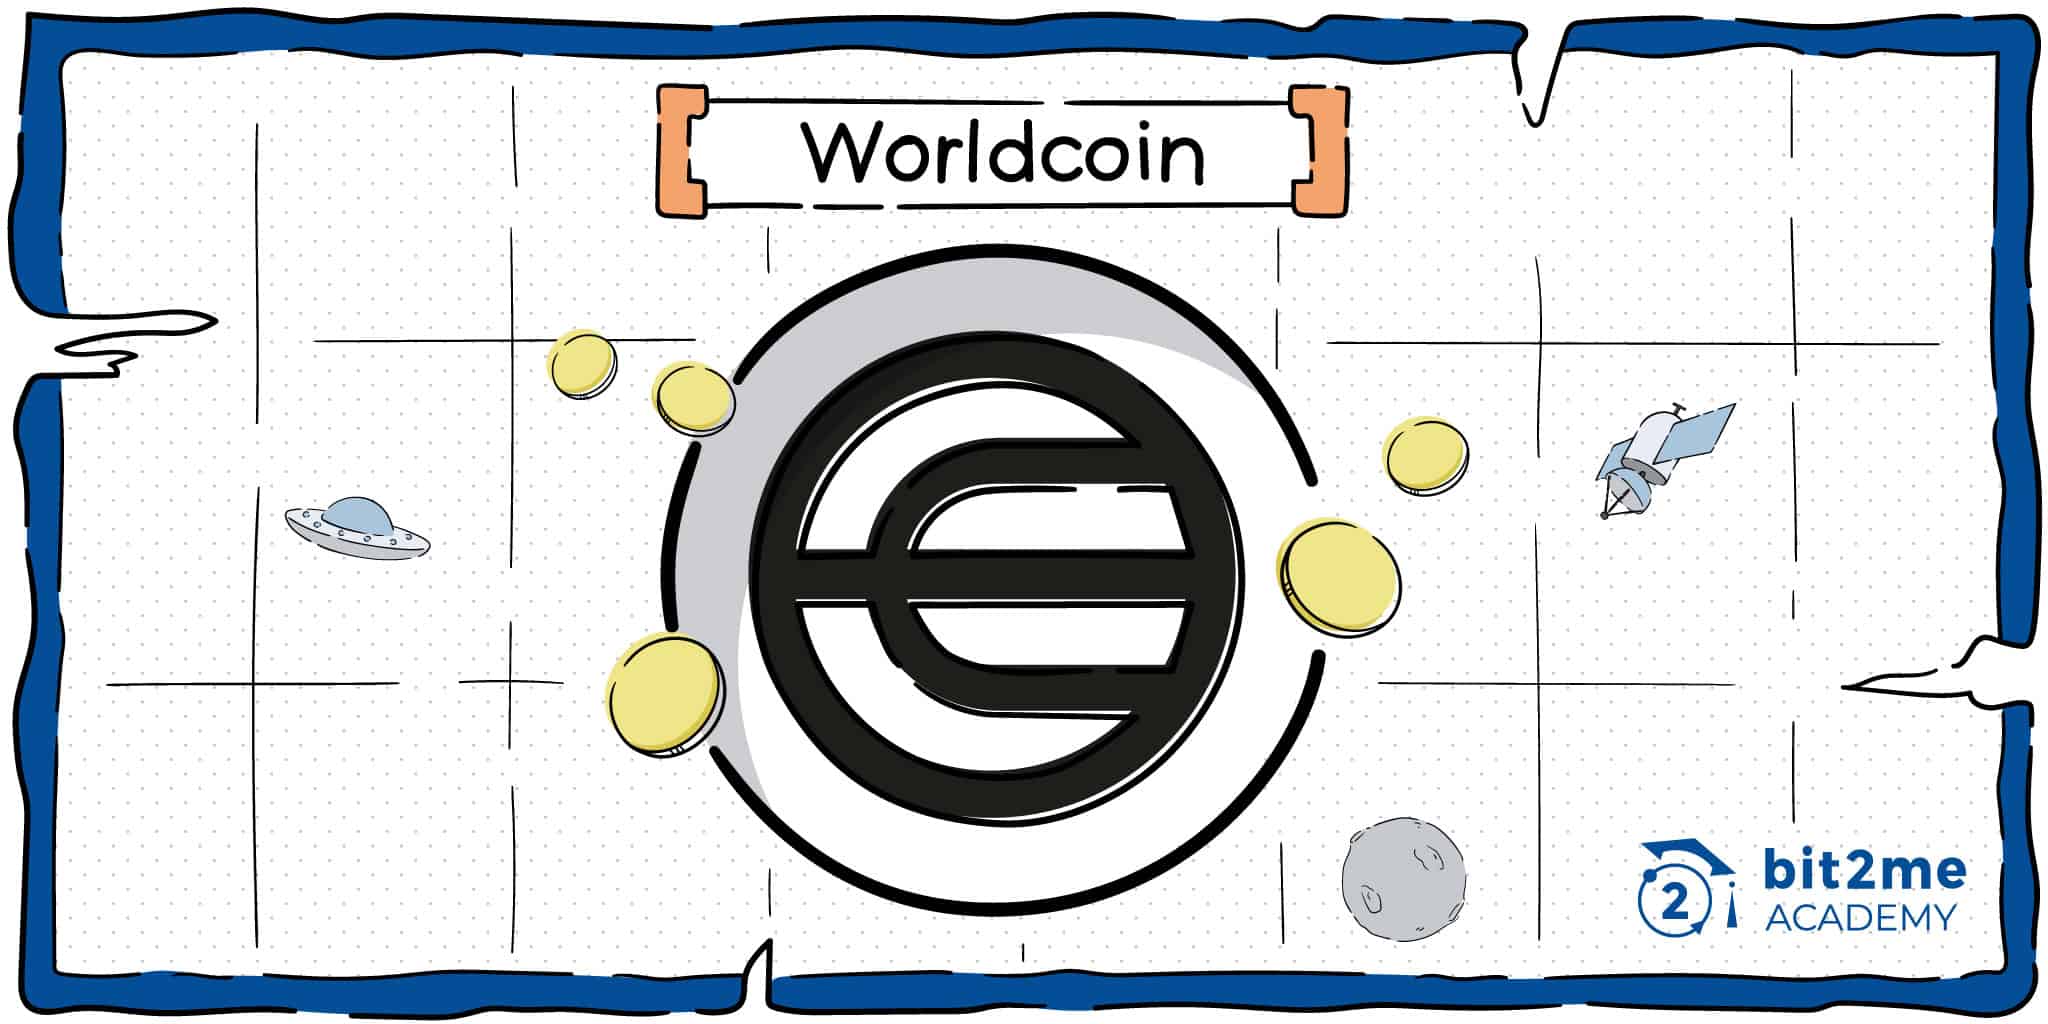 ¿Qué es Worldcoin?